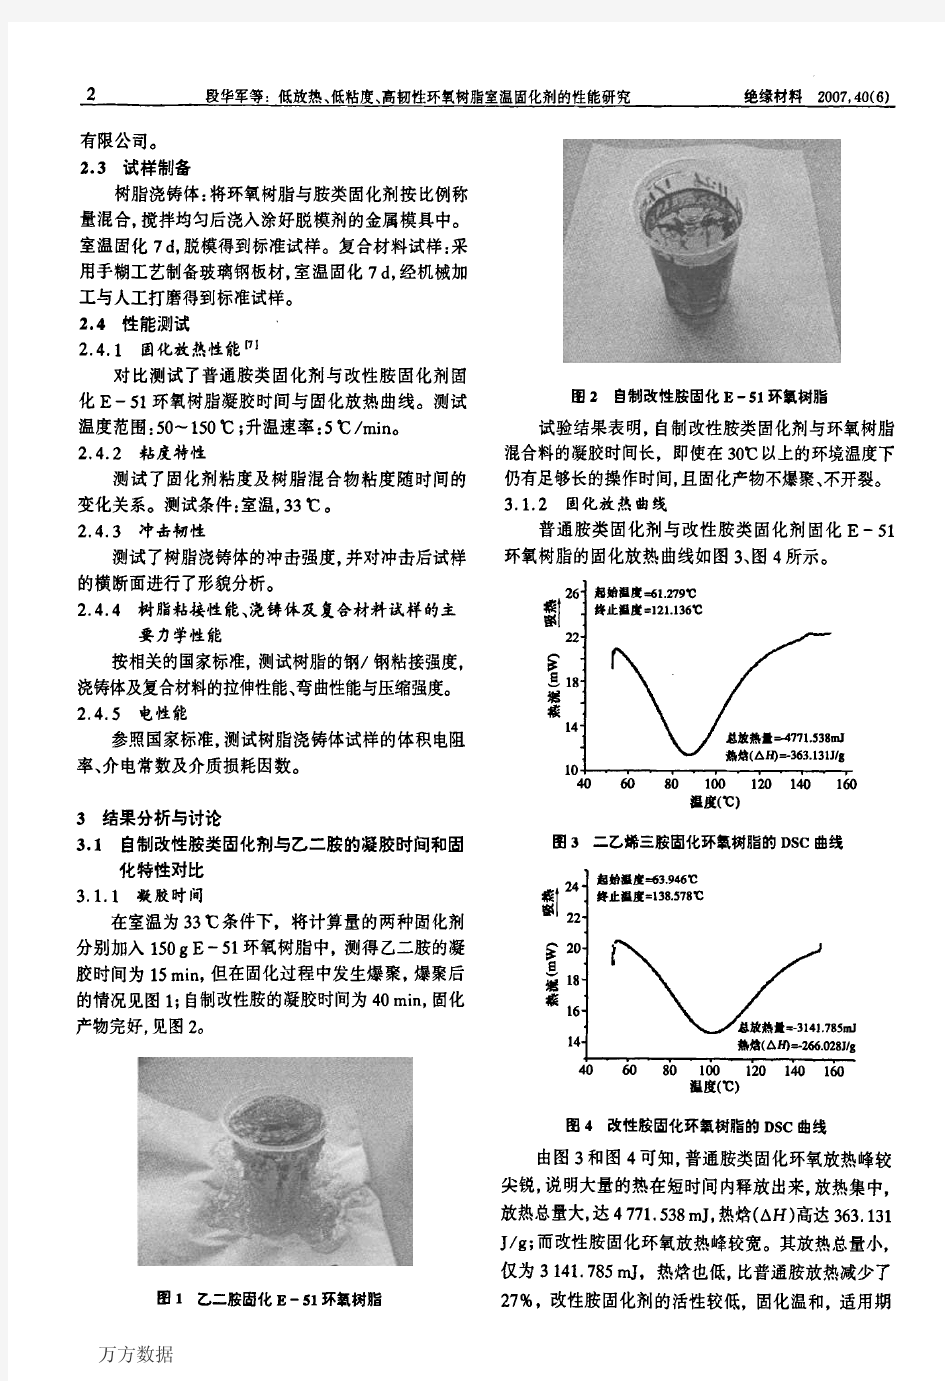 736-低放热、低粘度、高韧性环氧树脂室温固化剂的性能研究与在线粘度计(黏度-改性胺类固化剂)